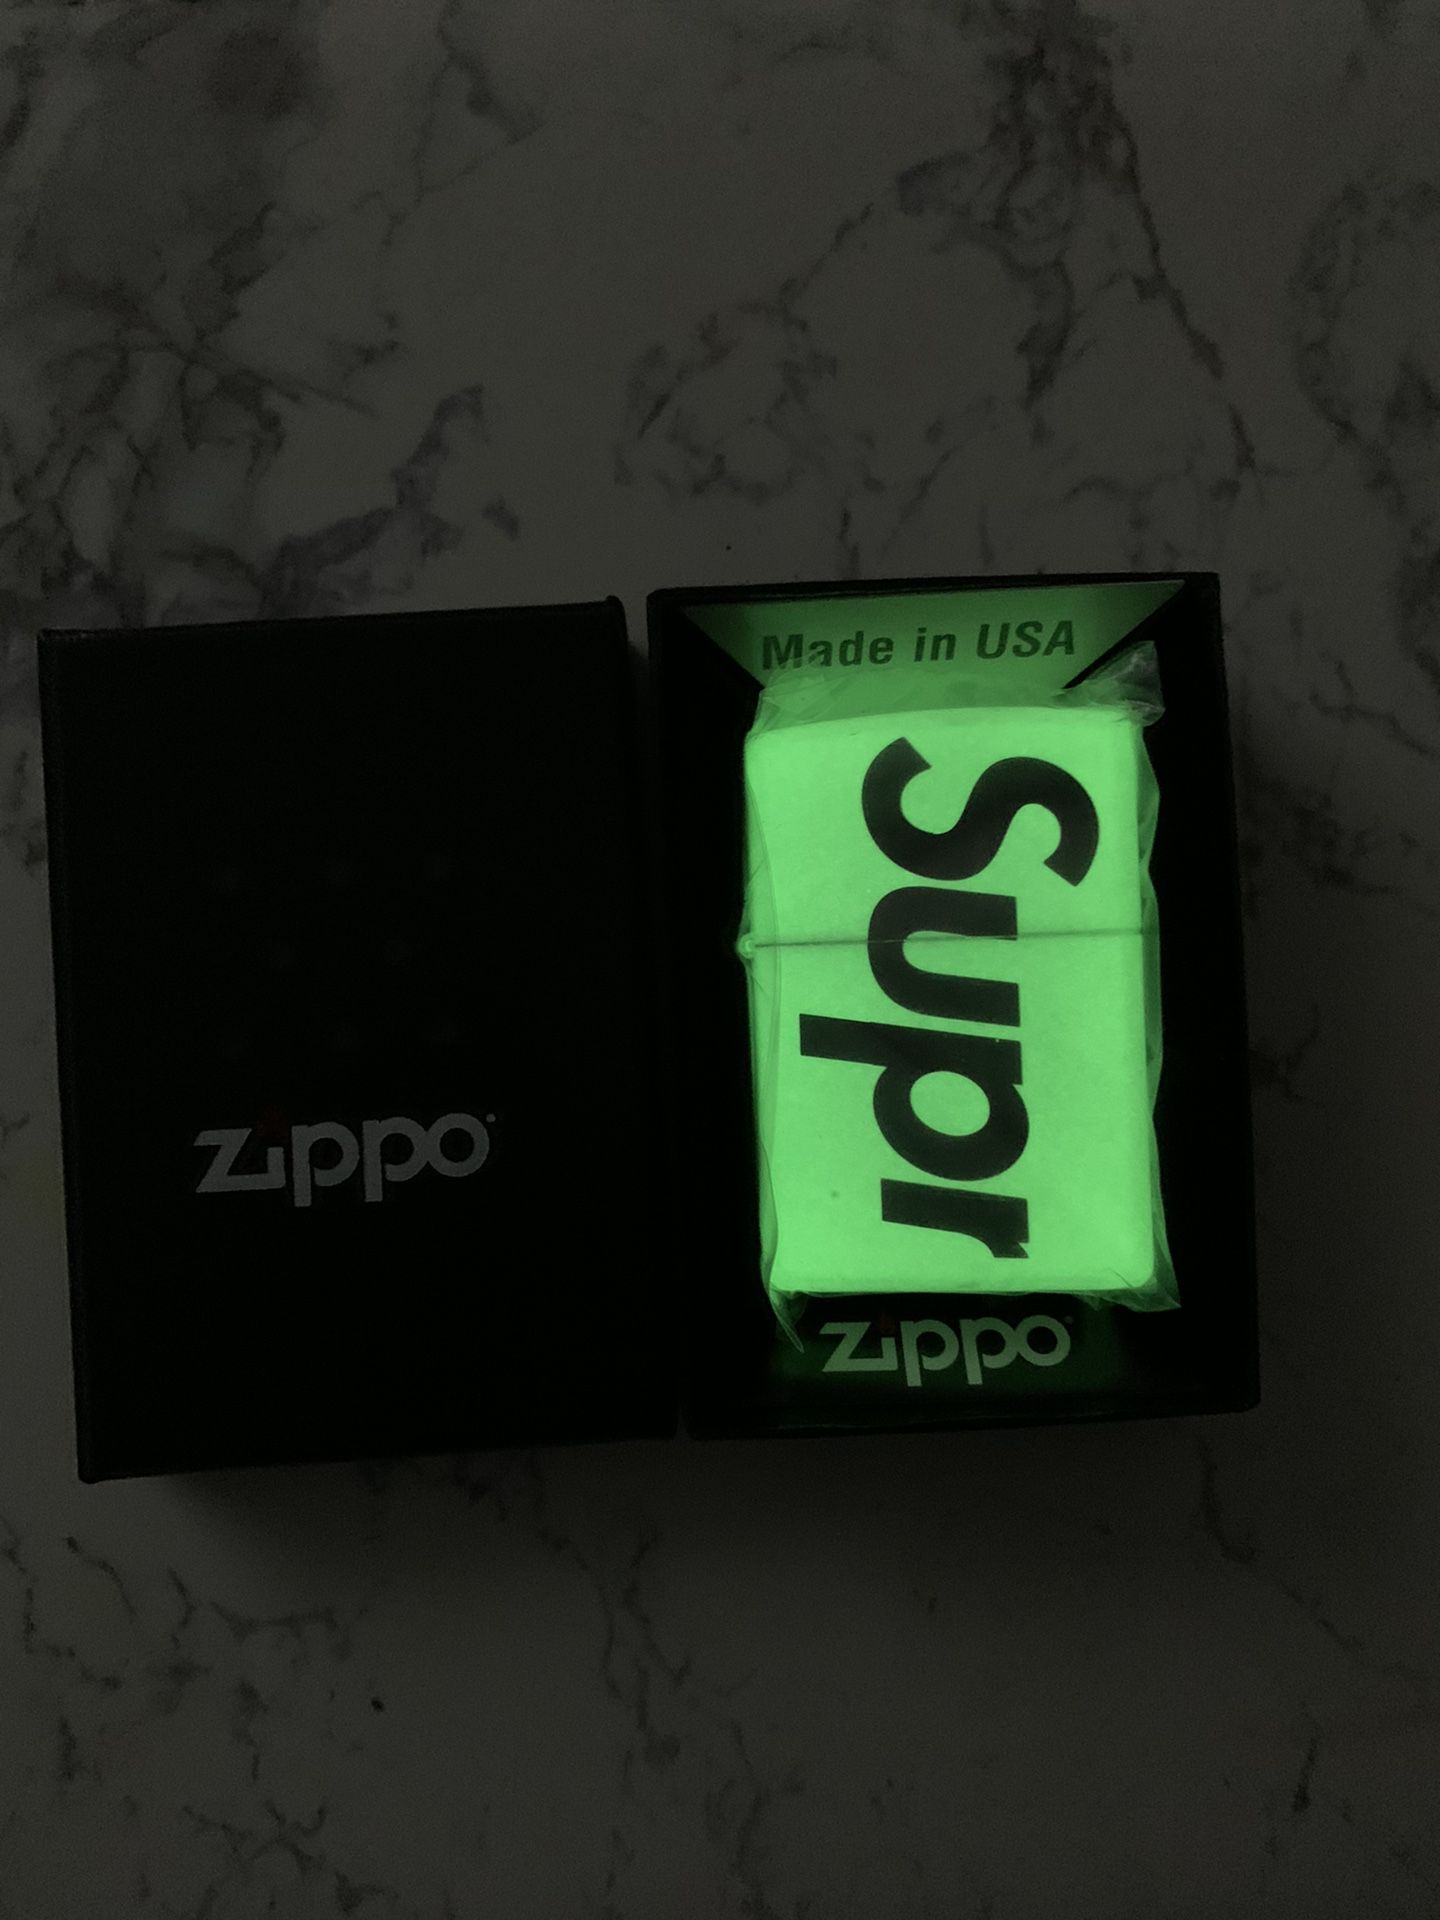 Supreme Zippo Glow in the dark lighter